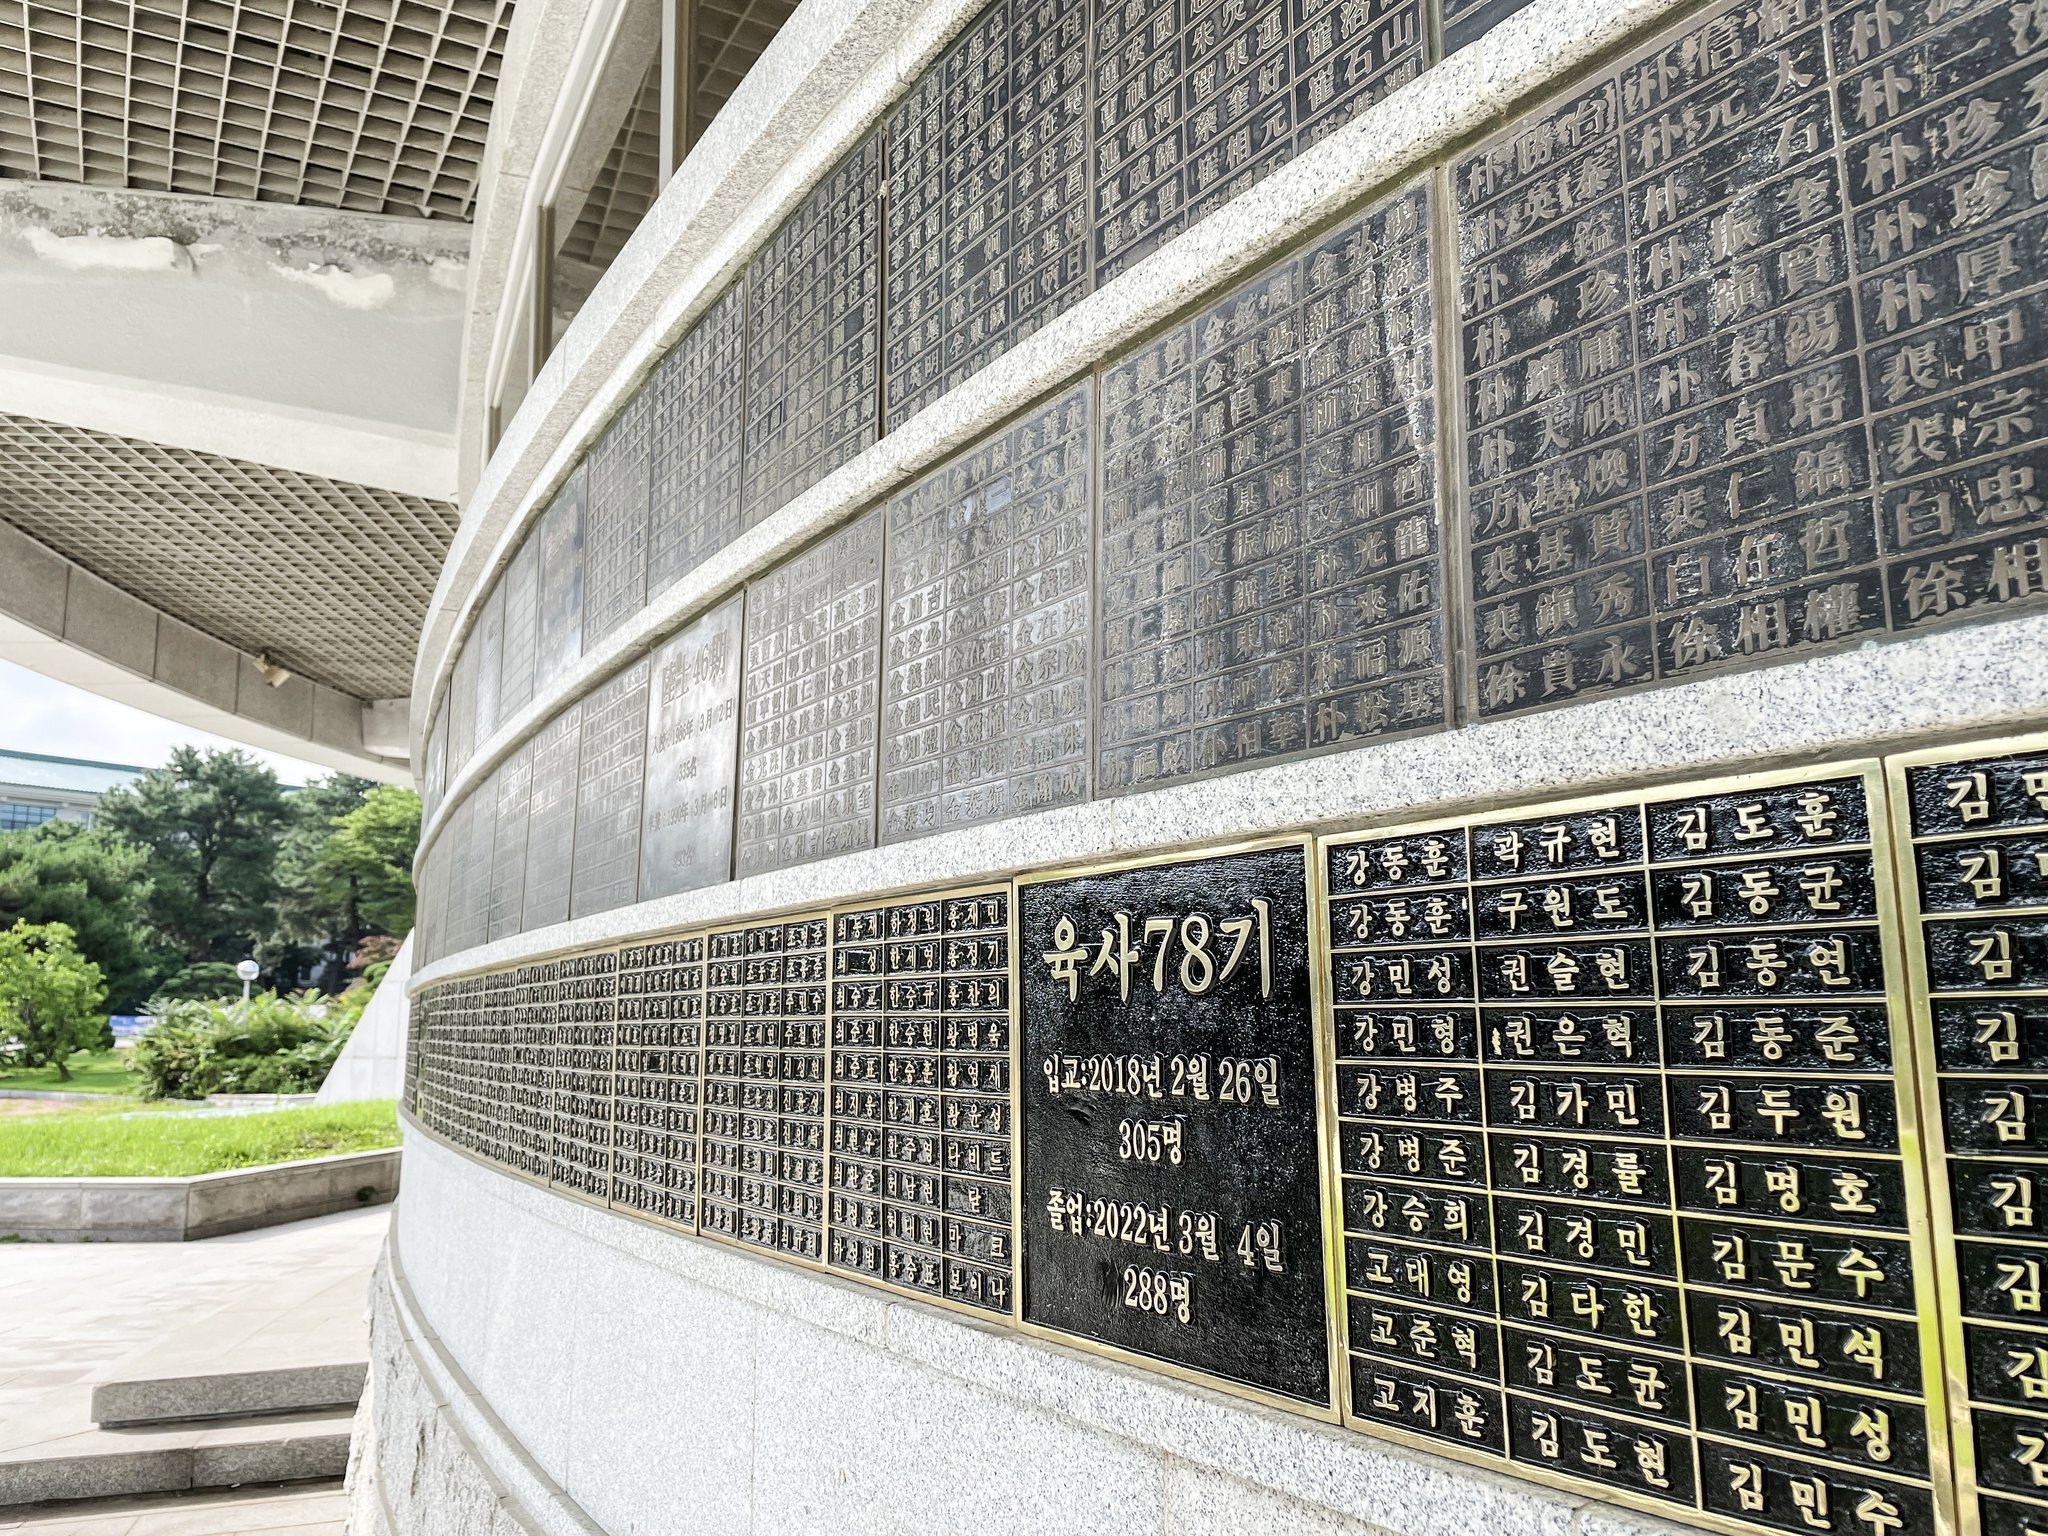 육사기념관 1층 외벽은 육사 졸업 생도 전원의 명단이 새겨진 동판들이 둘러싸고 있다. 김상진 기자 